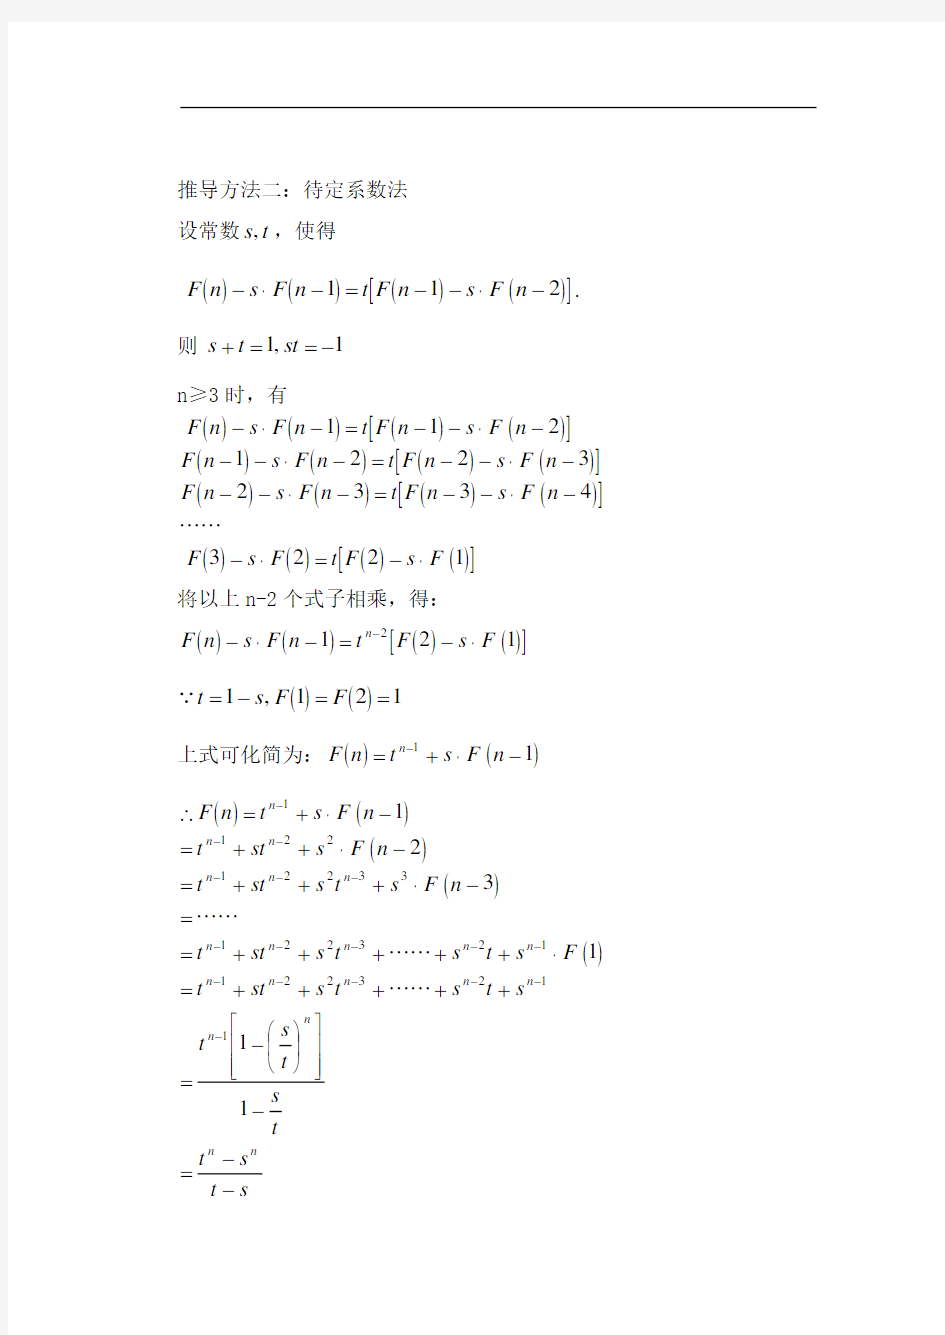 斐波那契数列通项公式的推导